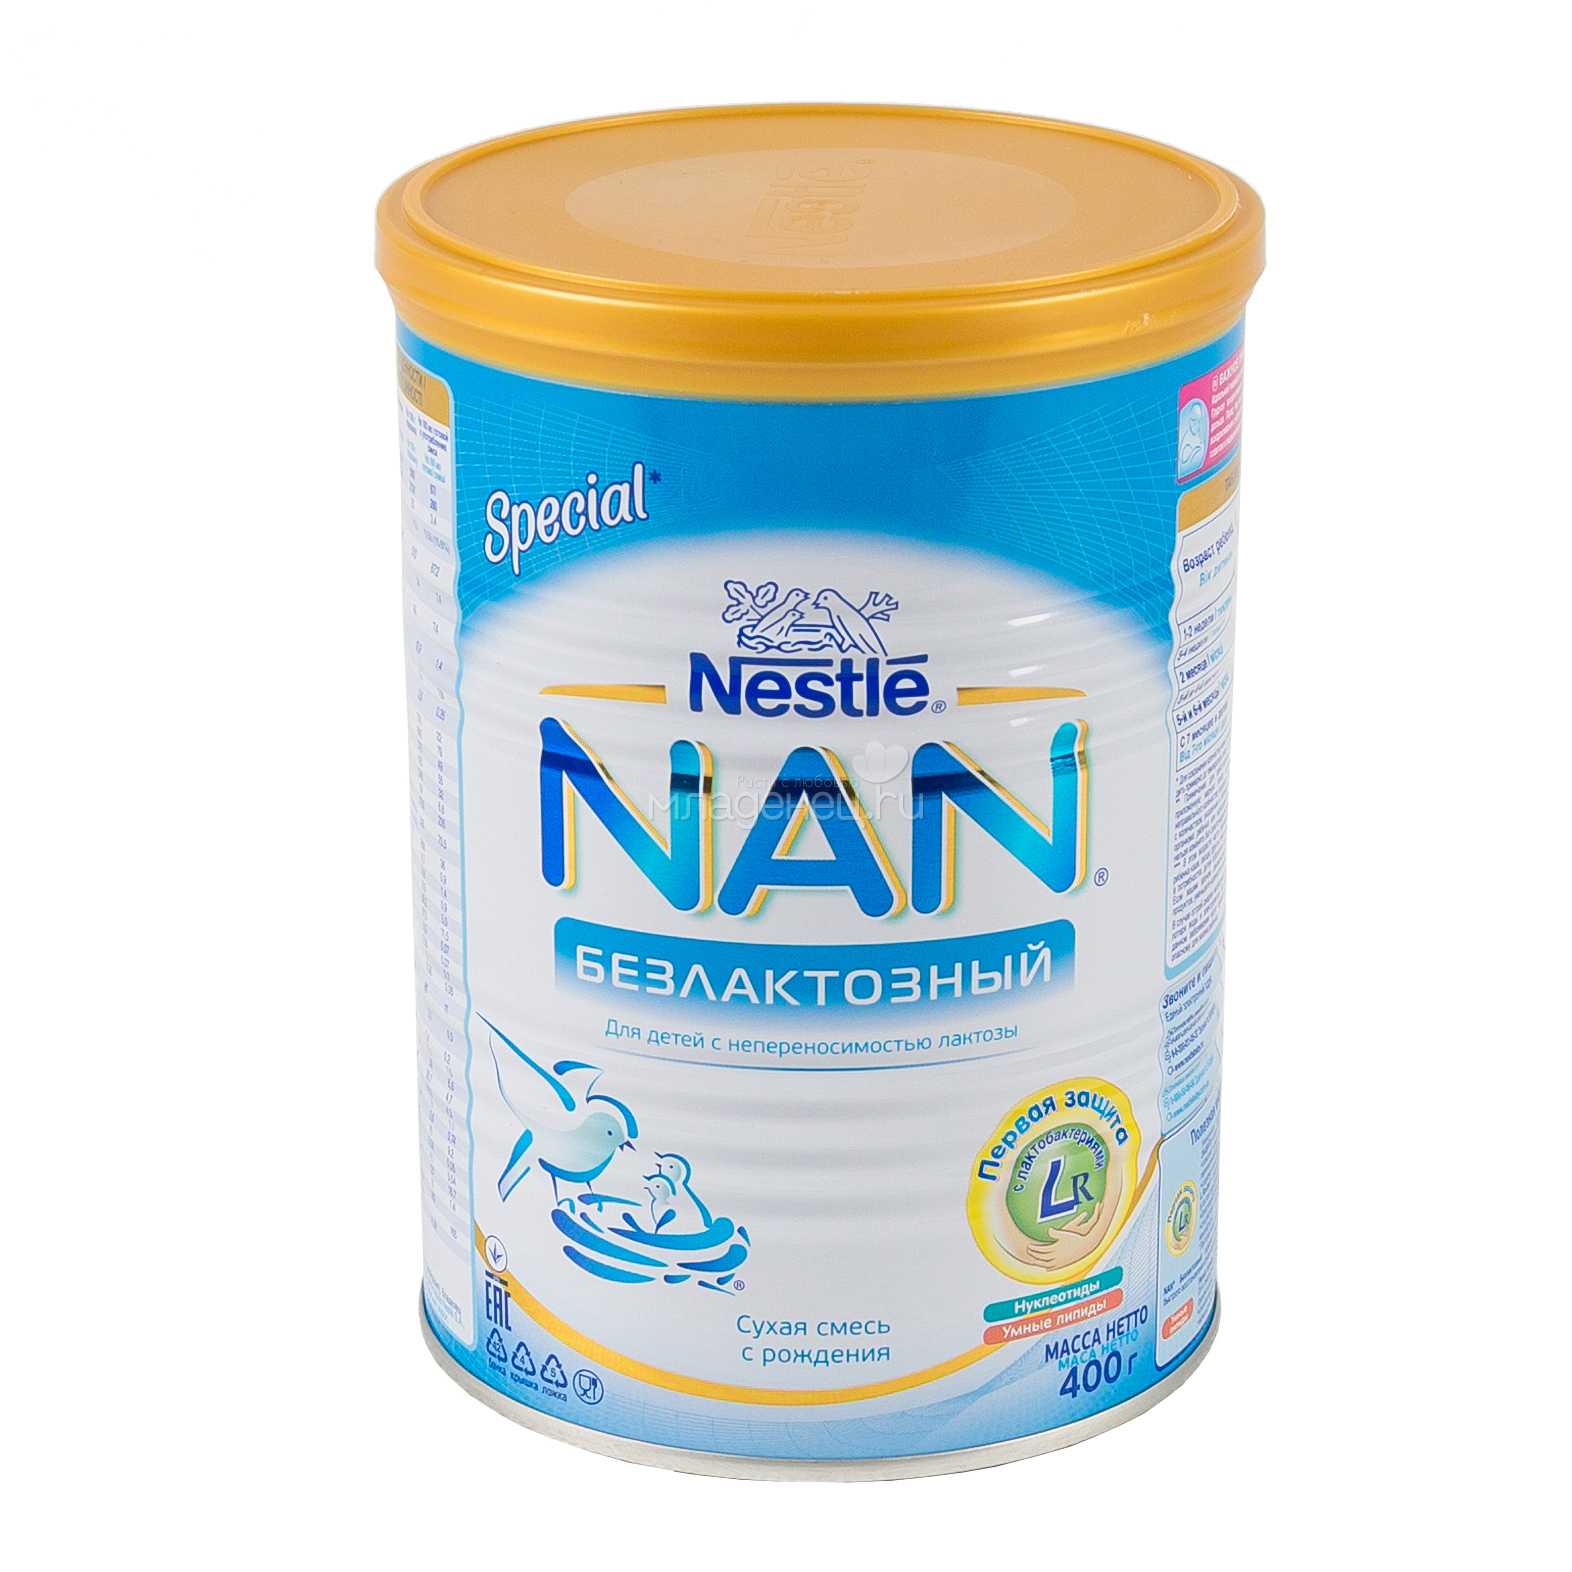 Nestle Безлактозный nan гр